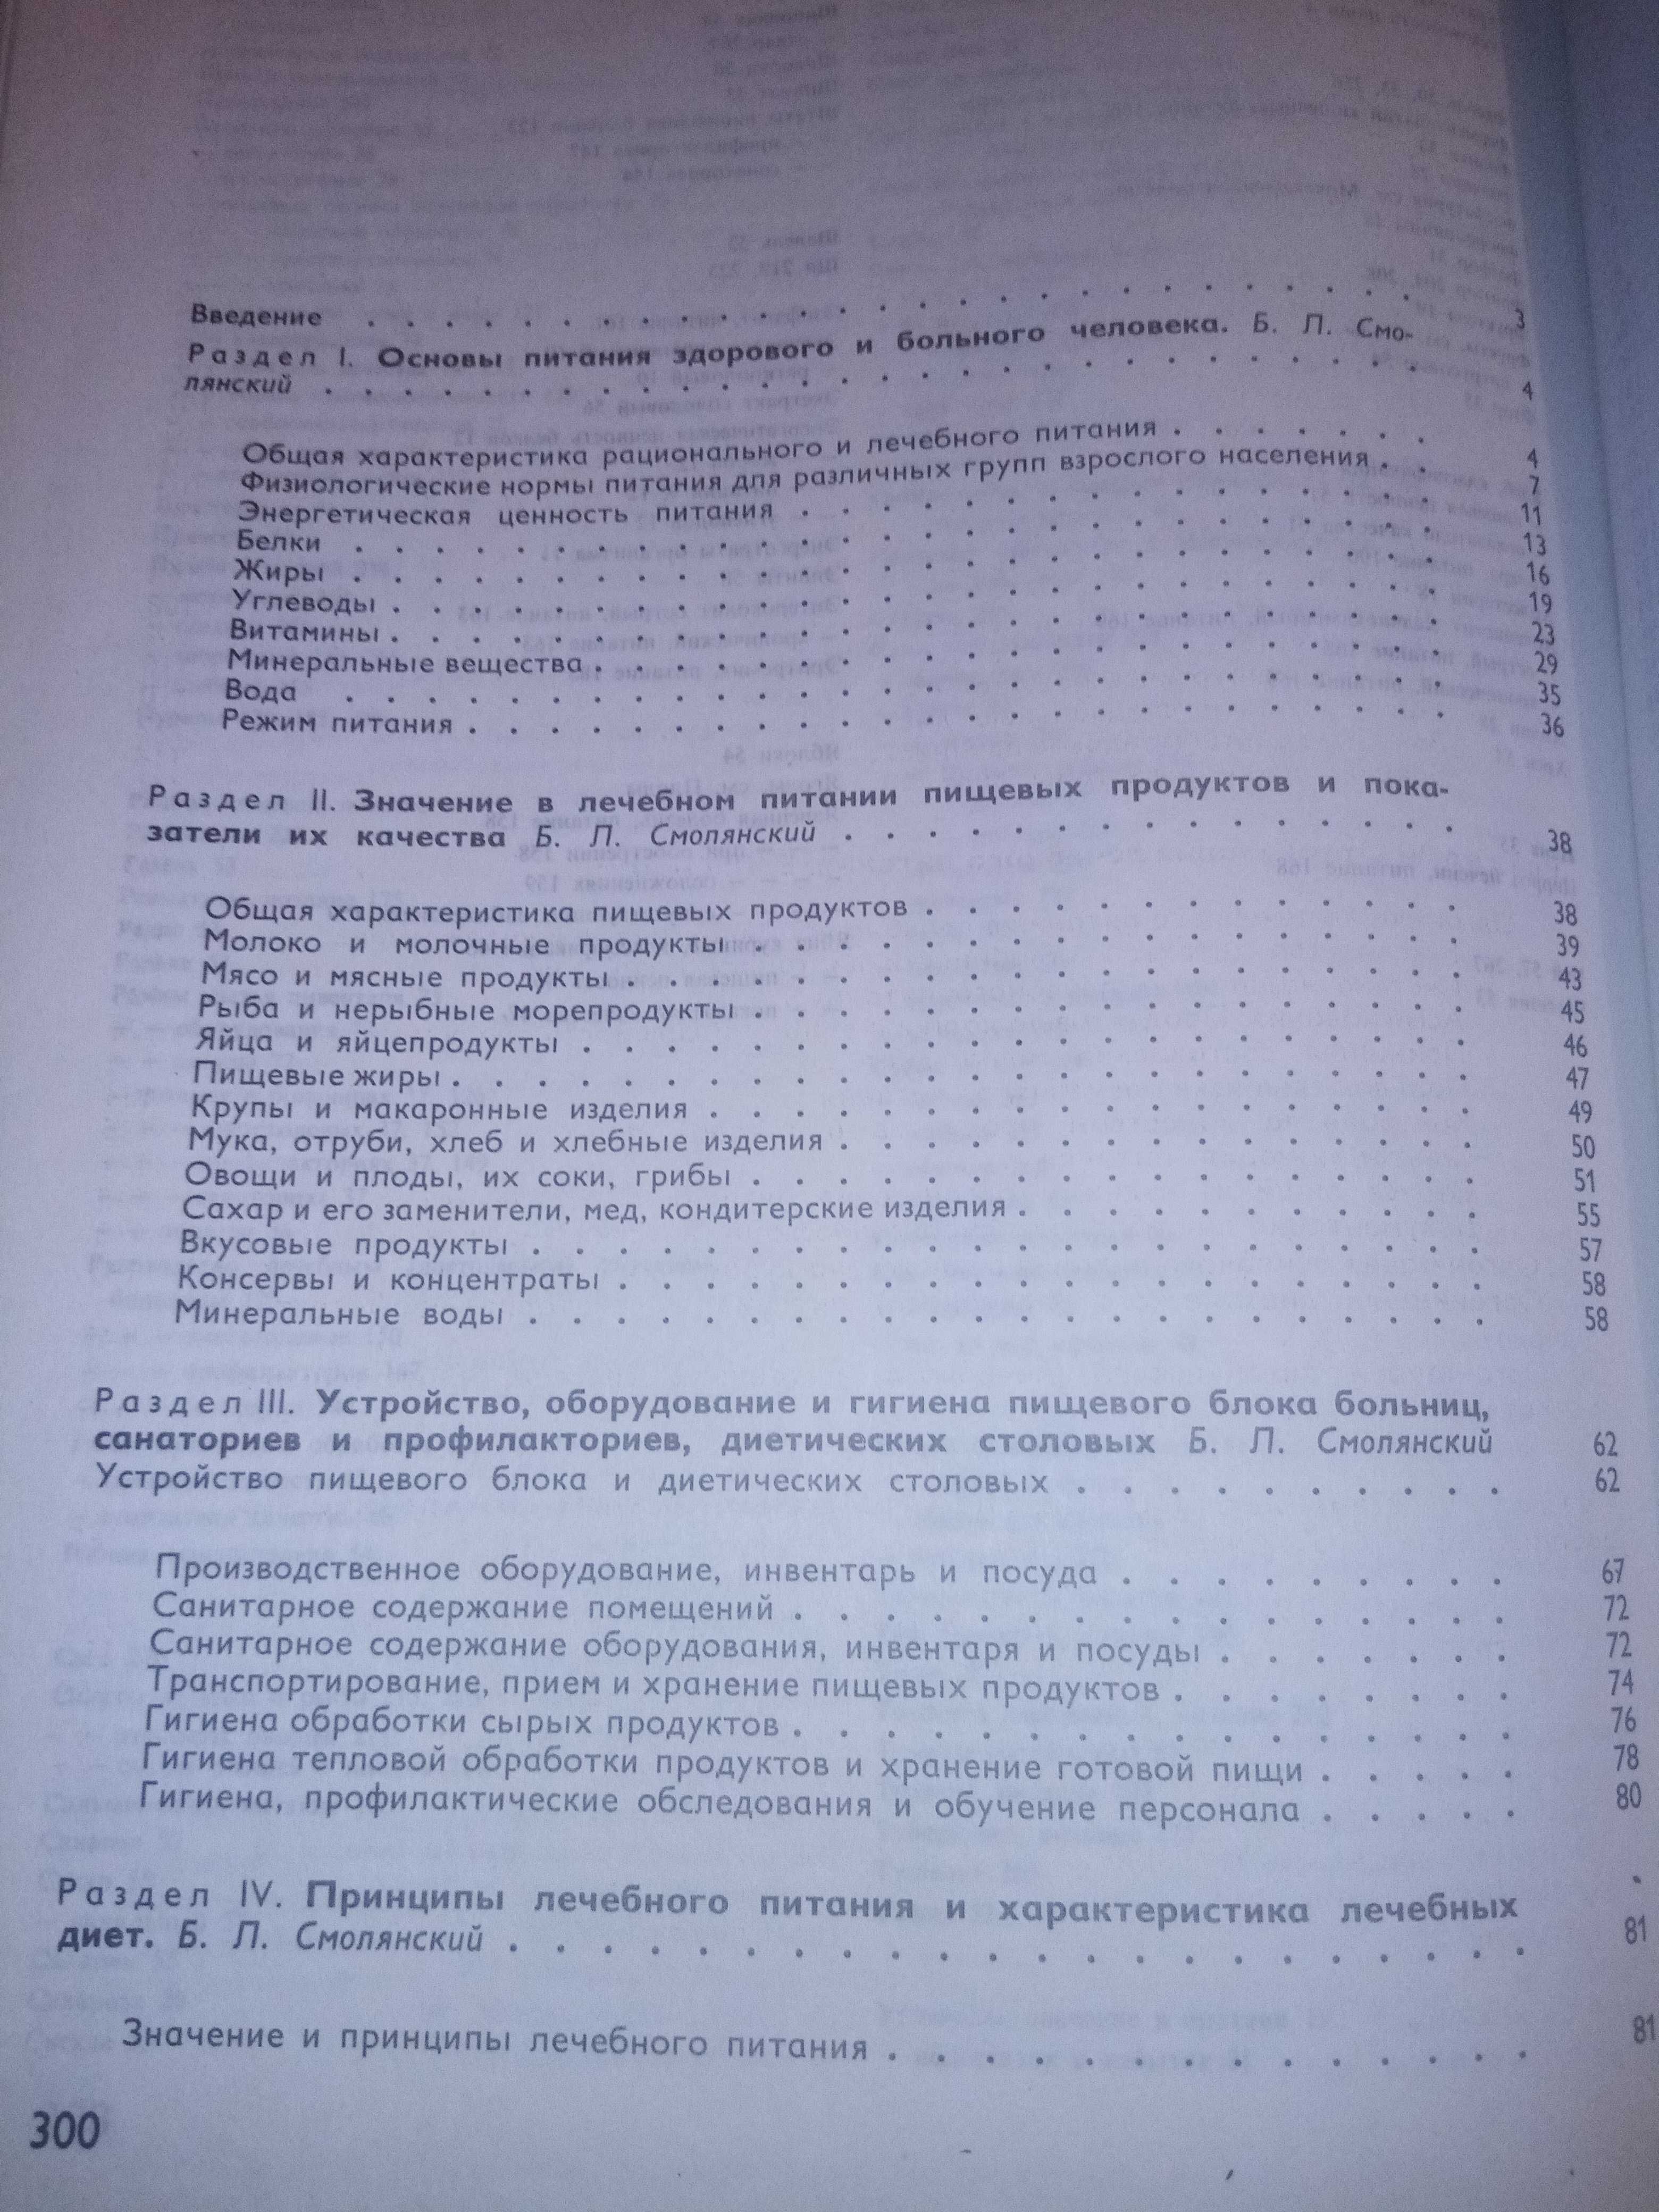 Смоленский, Справочник по лечебному питанию для диет-сестёр и поваров